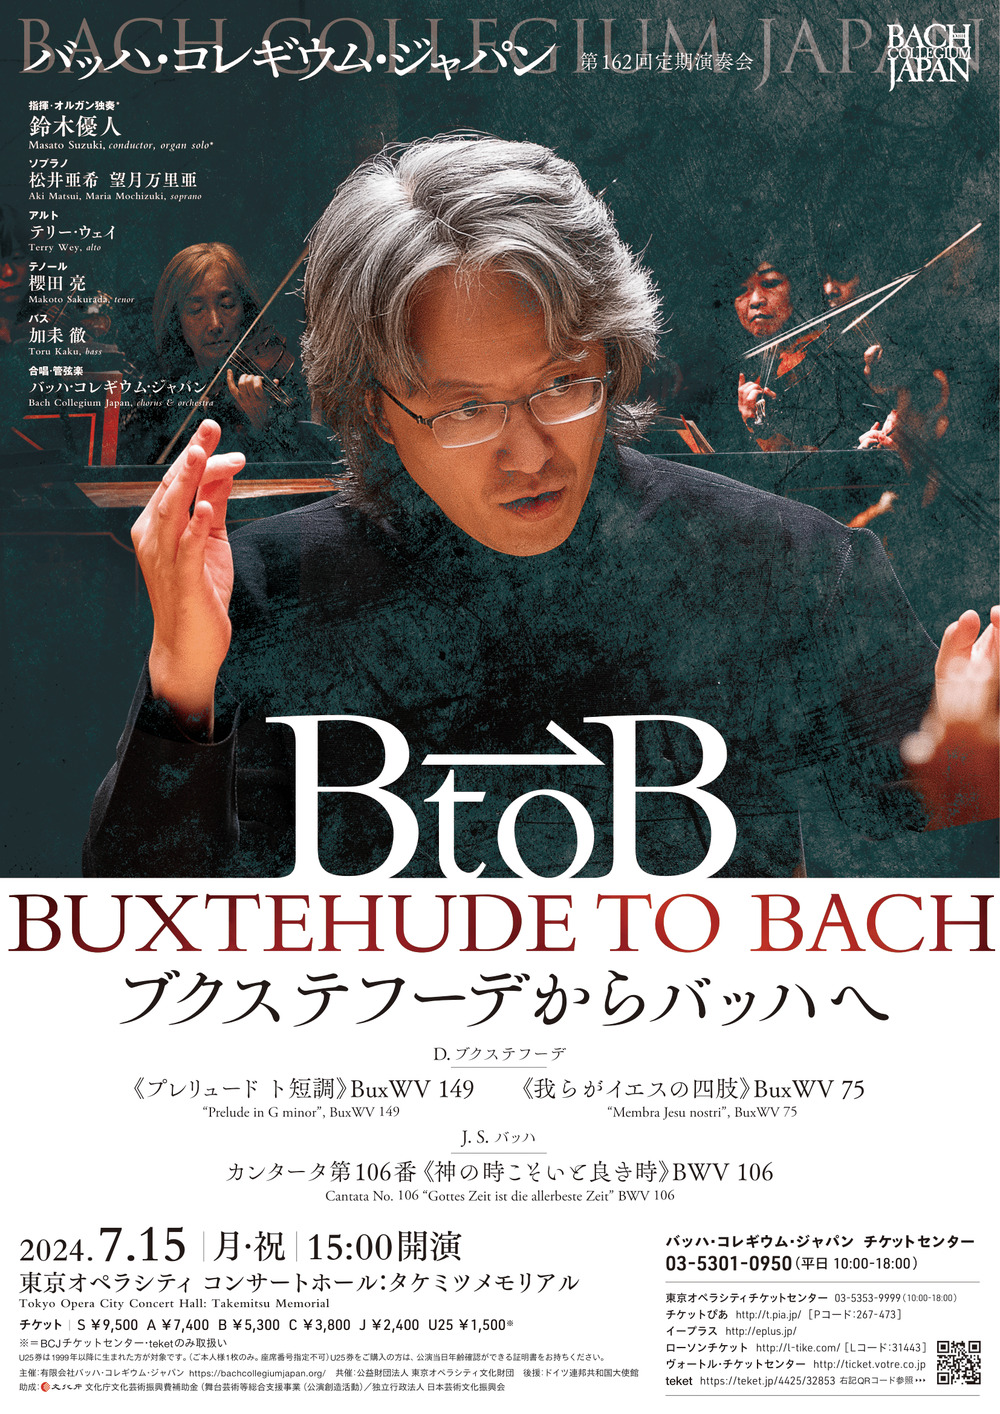 BCJ】ブクステフーデからバッハへ【バッハ・コレギウム・ジャパン（BCJ）】 | 東京オペラシティ コンサートホール：タケミツ メモリアル